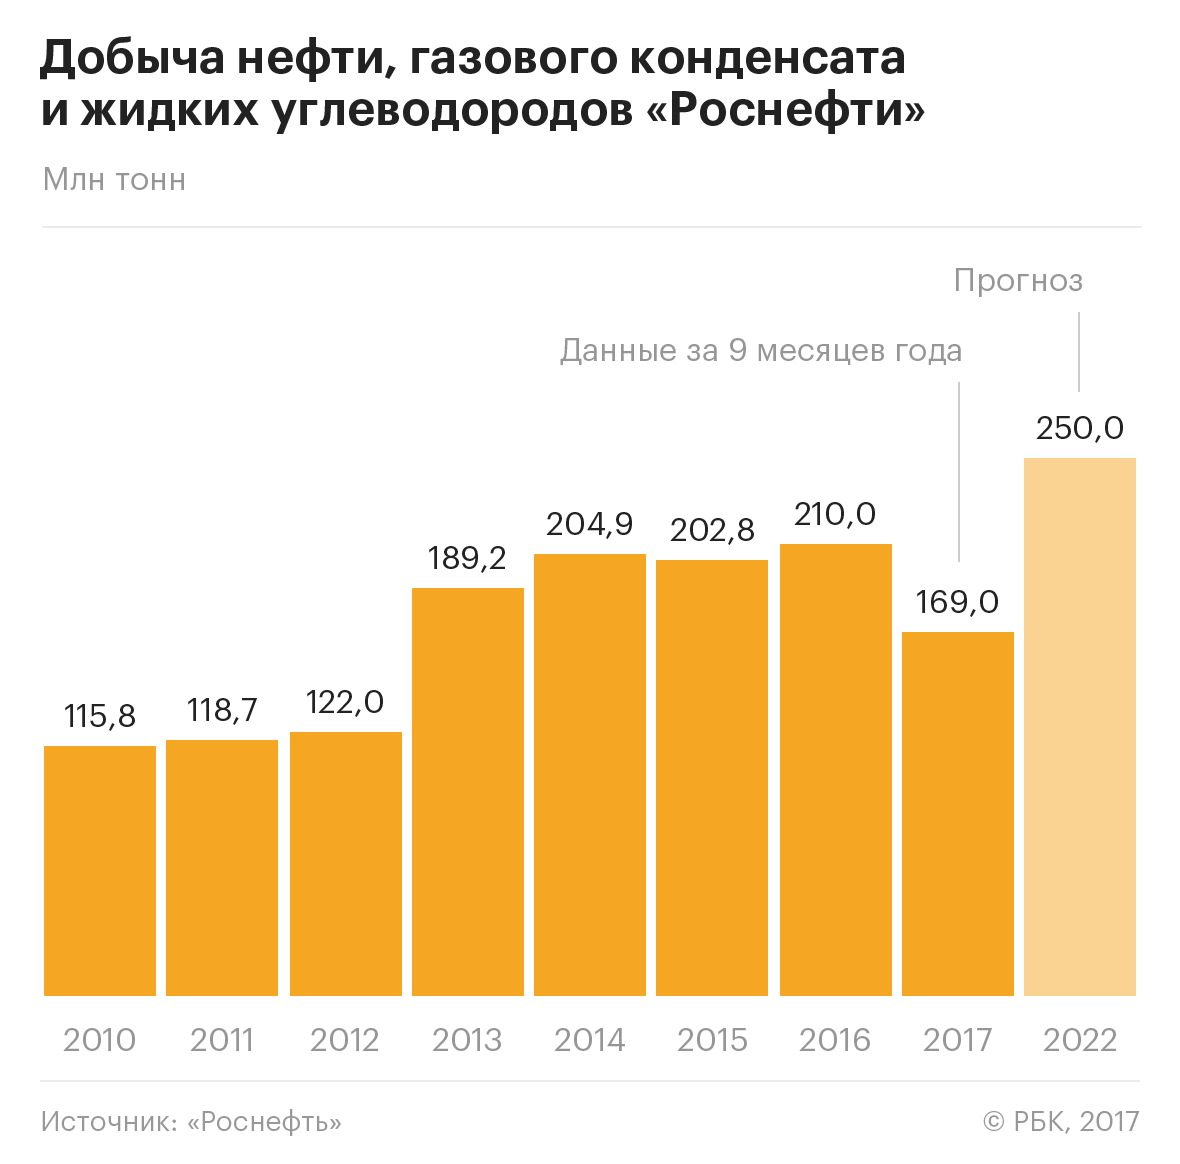 «Роснефть» к 2022 году увеличит добычу до 250 млн т